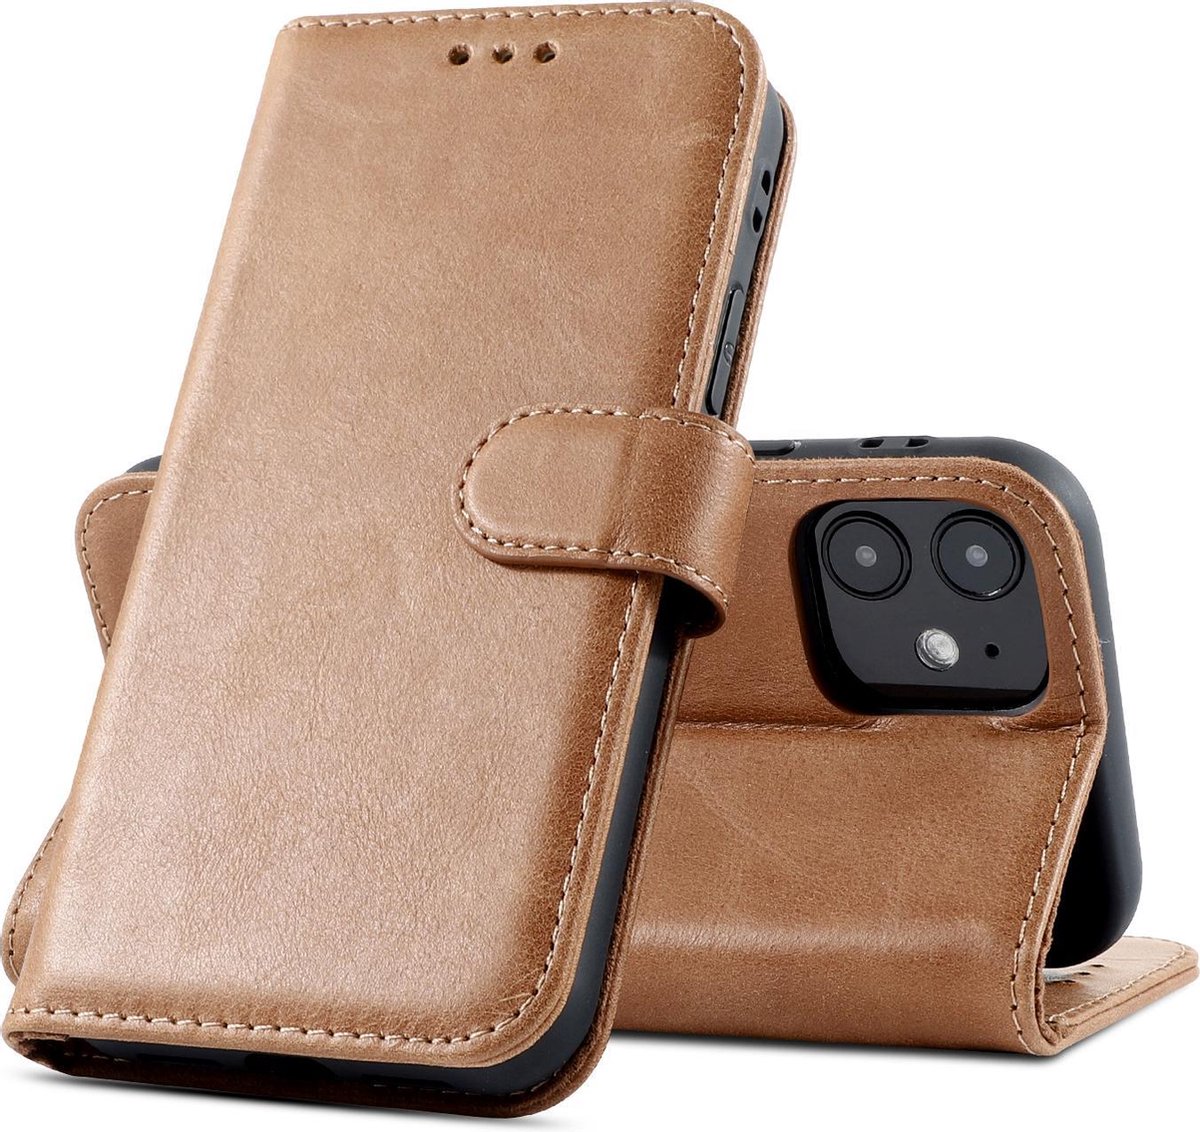 Klassiek Design - Echt Lederen Hoesje - Book Case Telefoonhoesje - Echt Leren Portemonnee Wallet Case - iPhone 12 Mini - Bruin